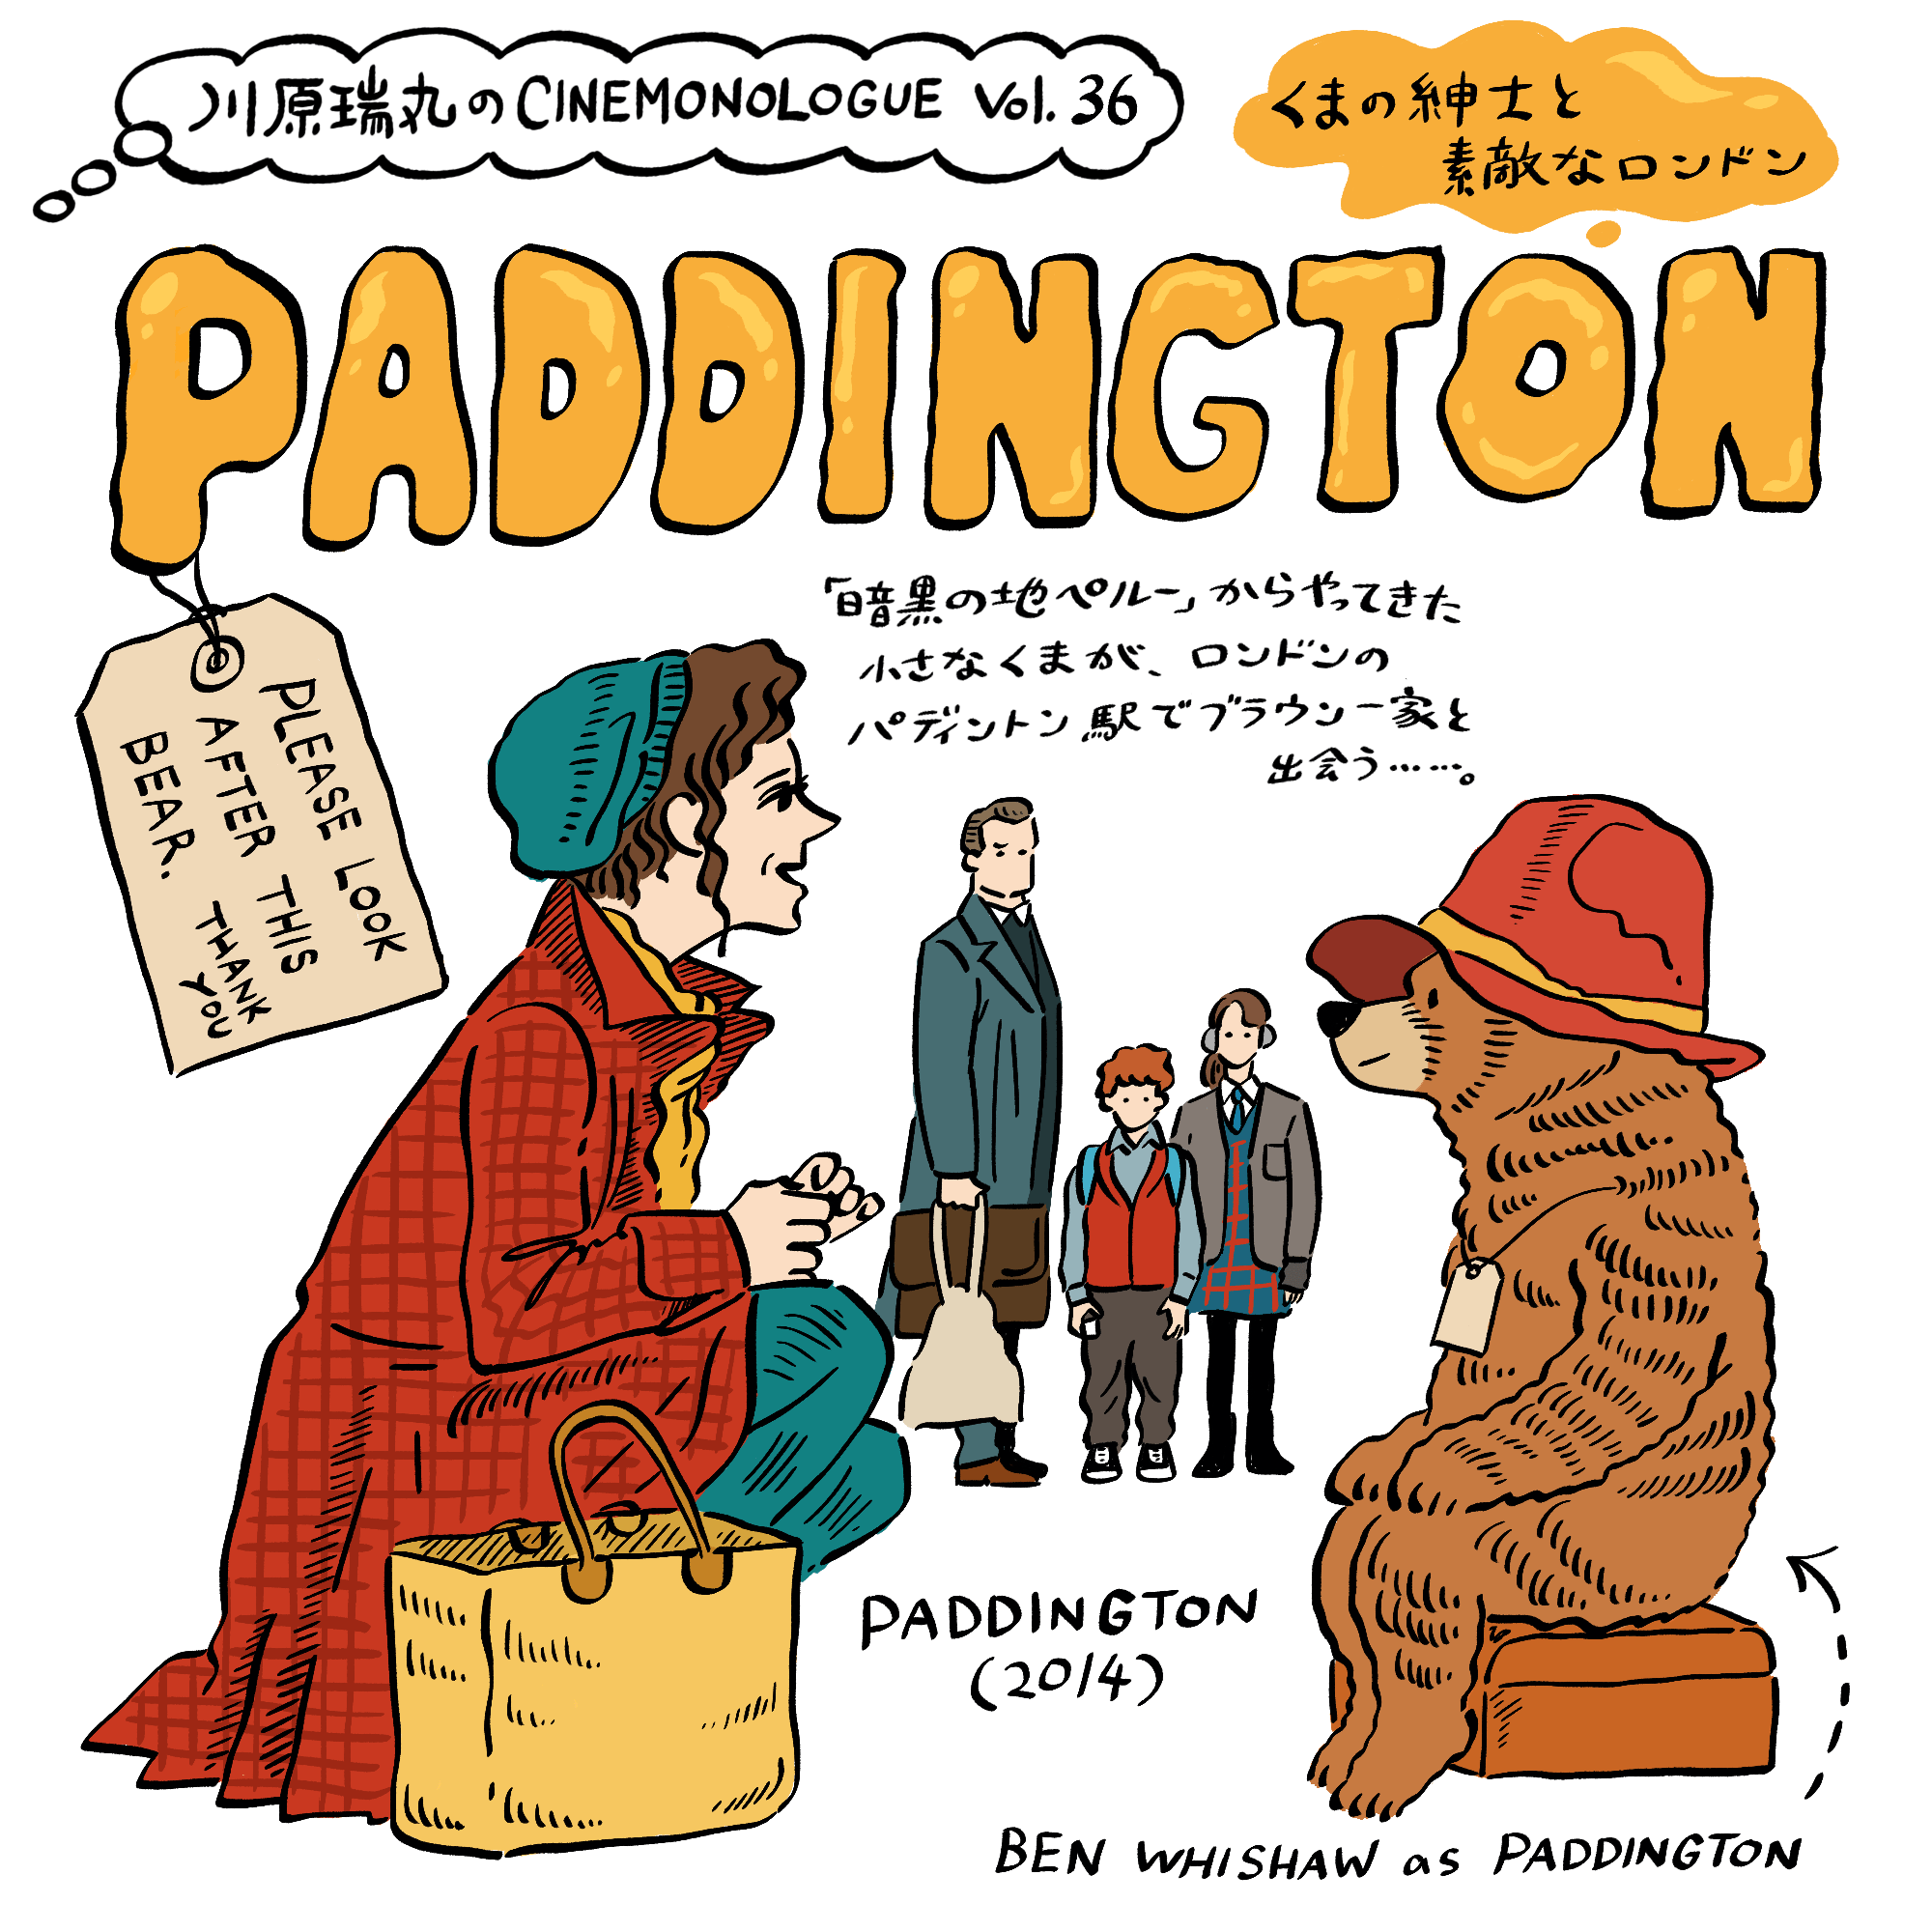 『パディントン』 くまの紳士と素敵なロンドン【川原瑞丸のCINEMONOLOGUE Vol.36】